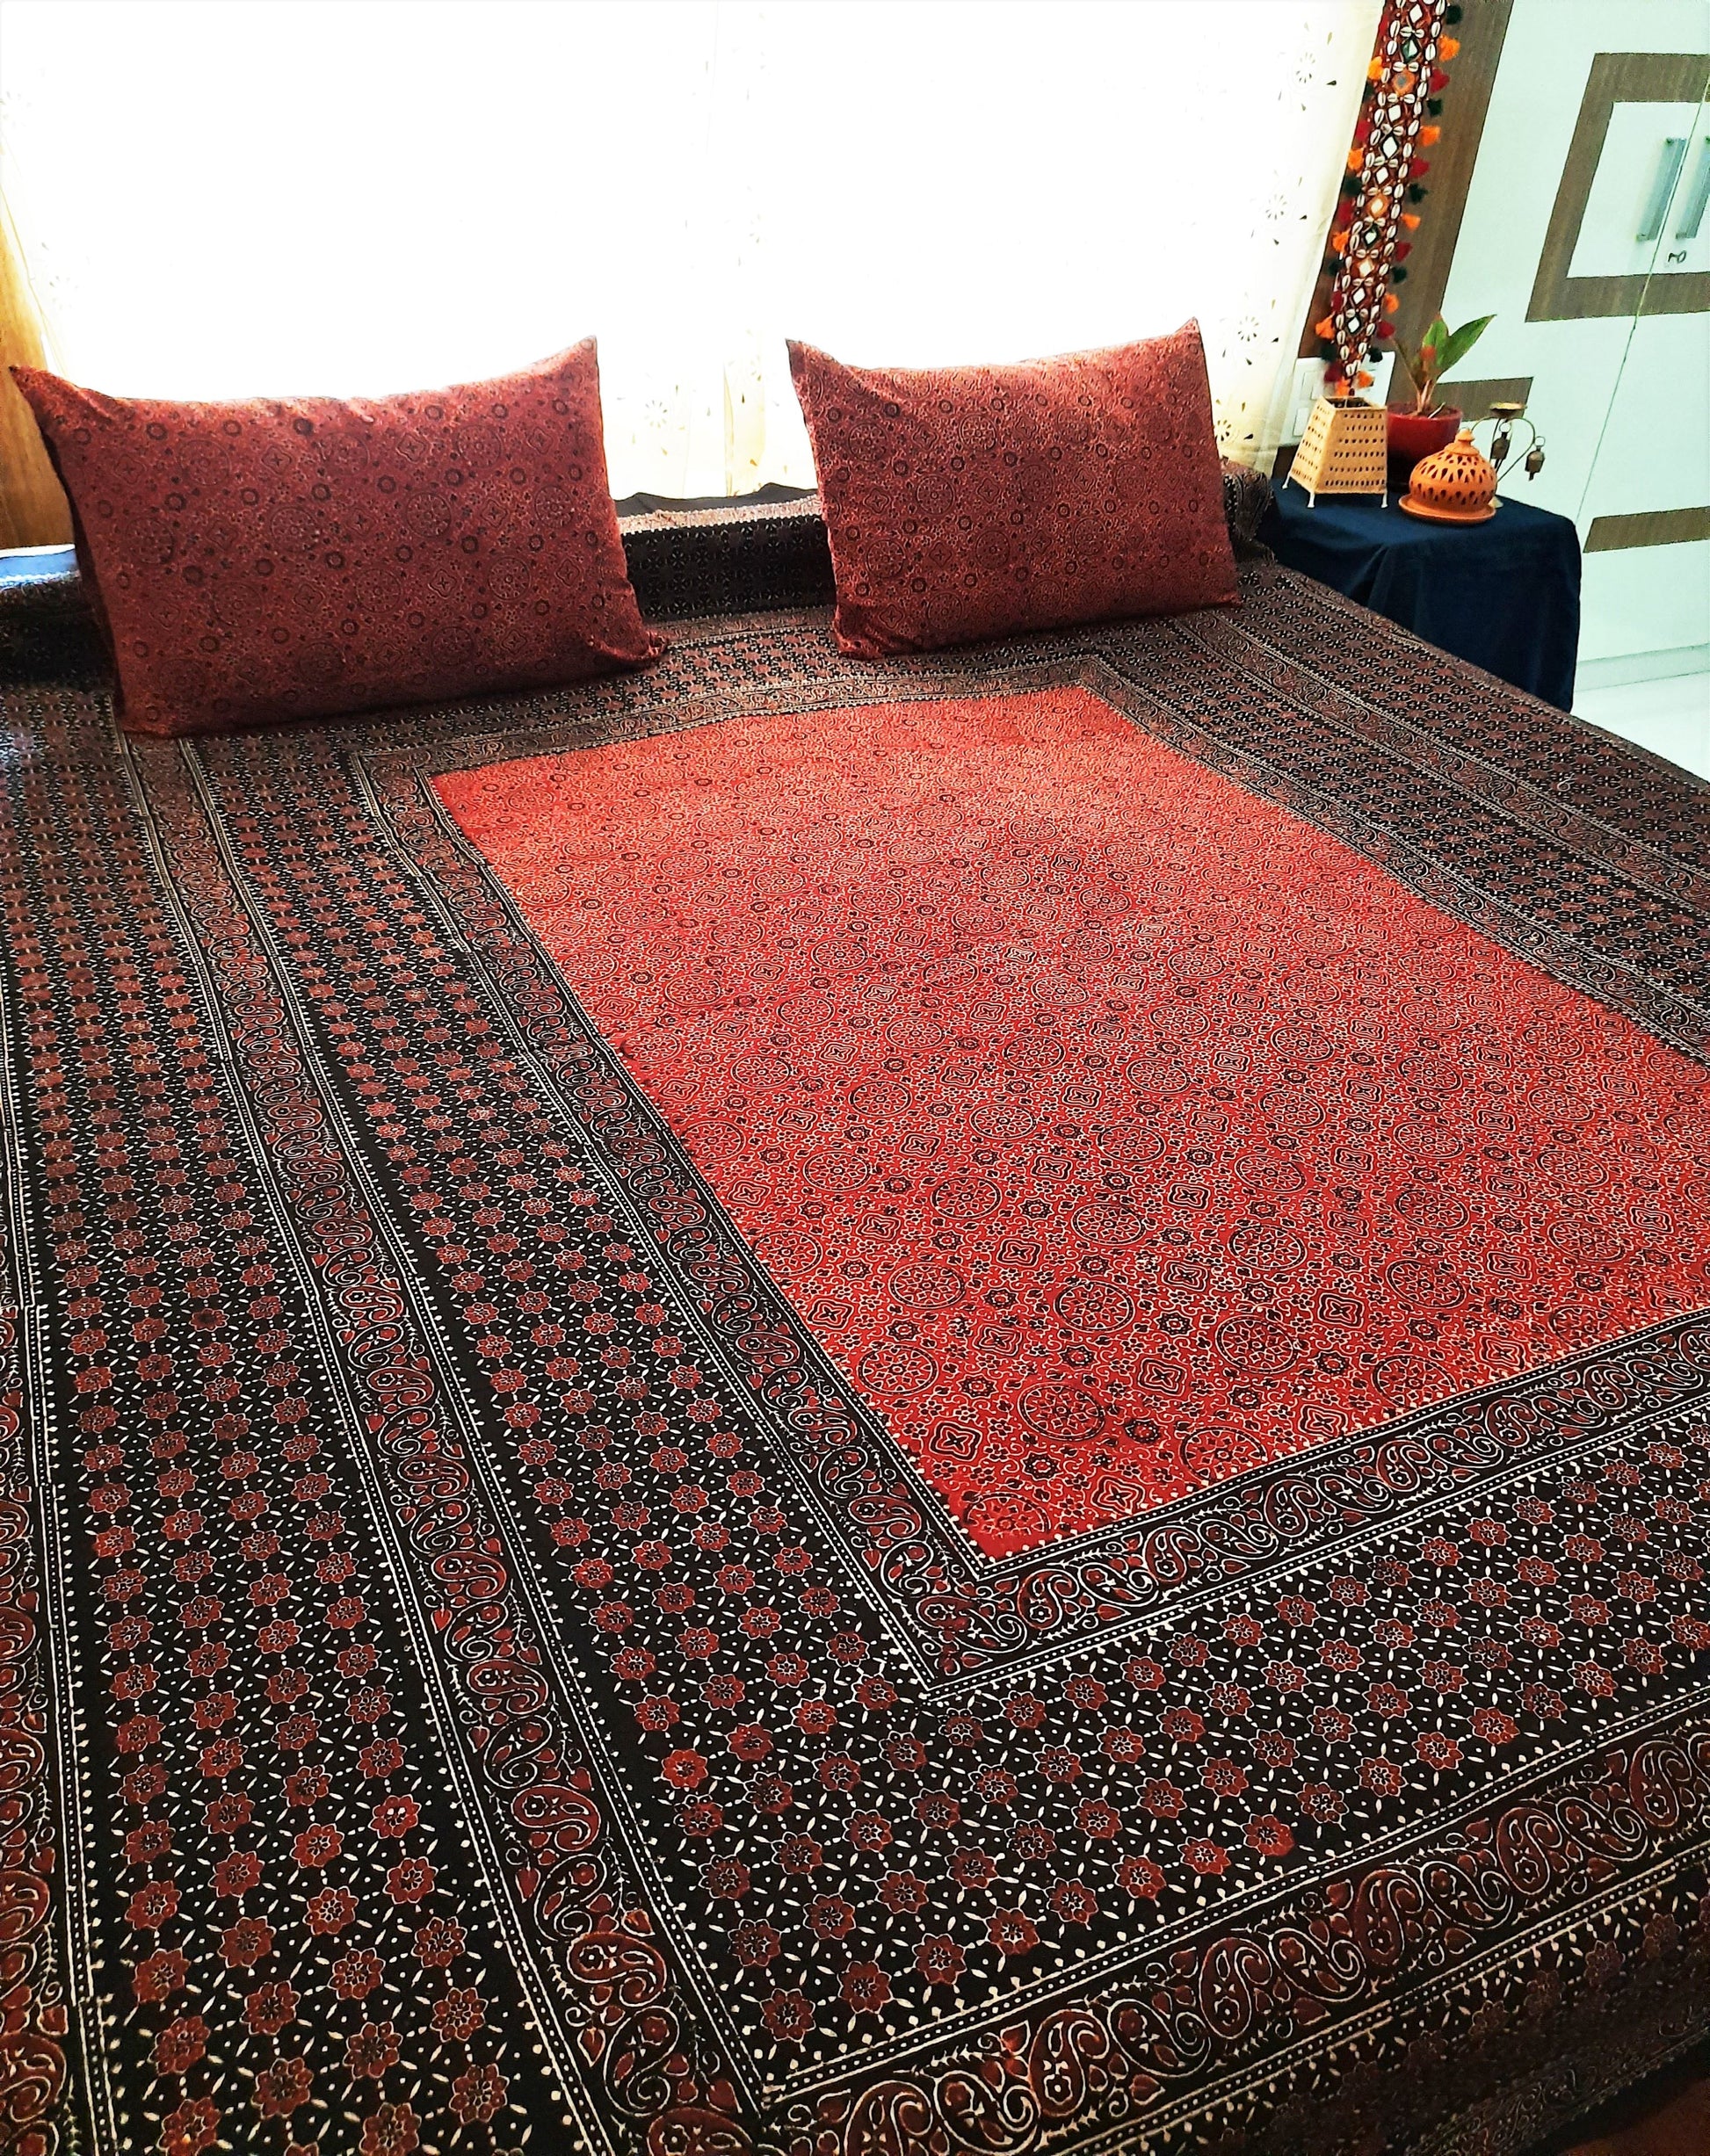 Madder red ajrakh bed linen